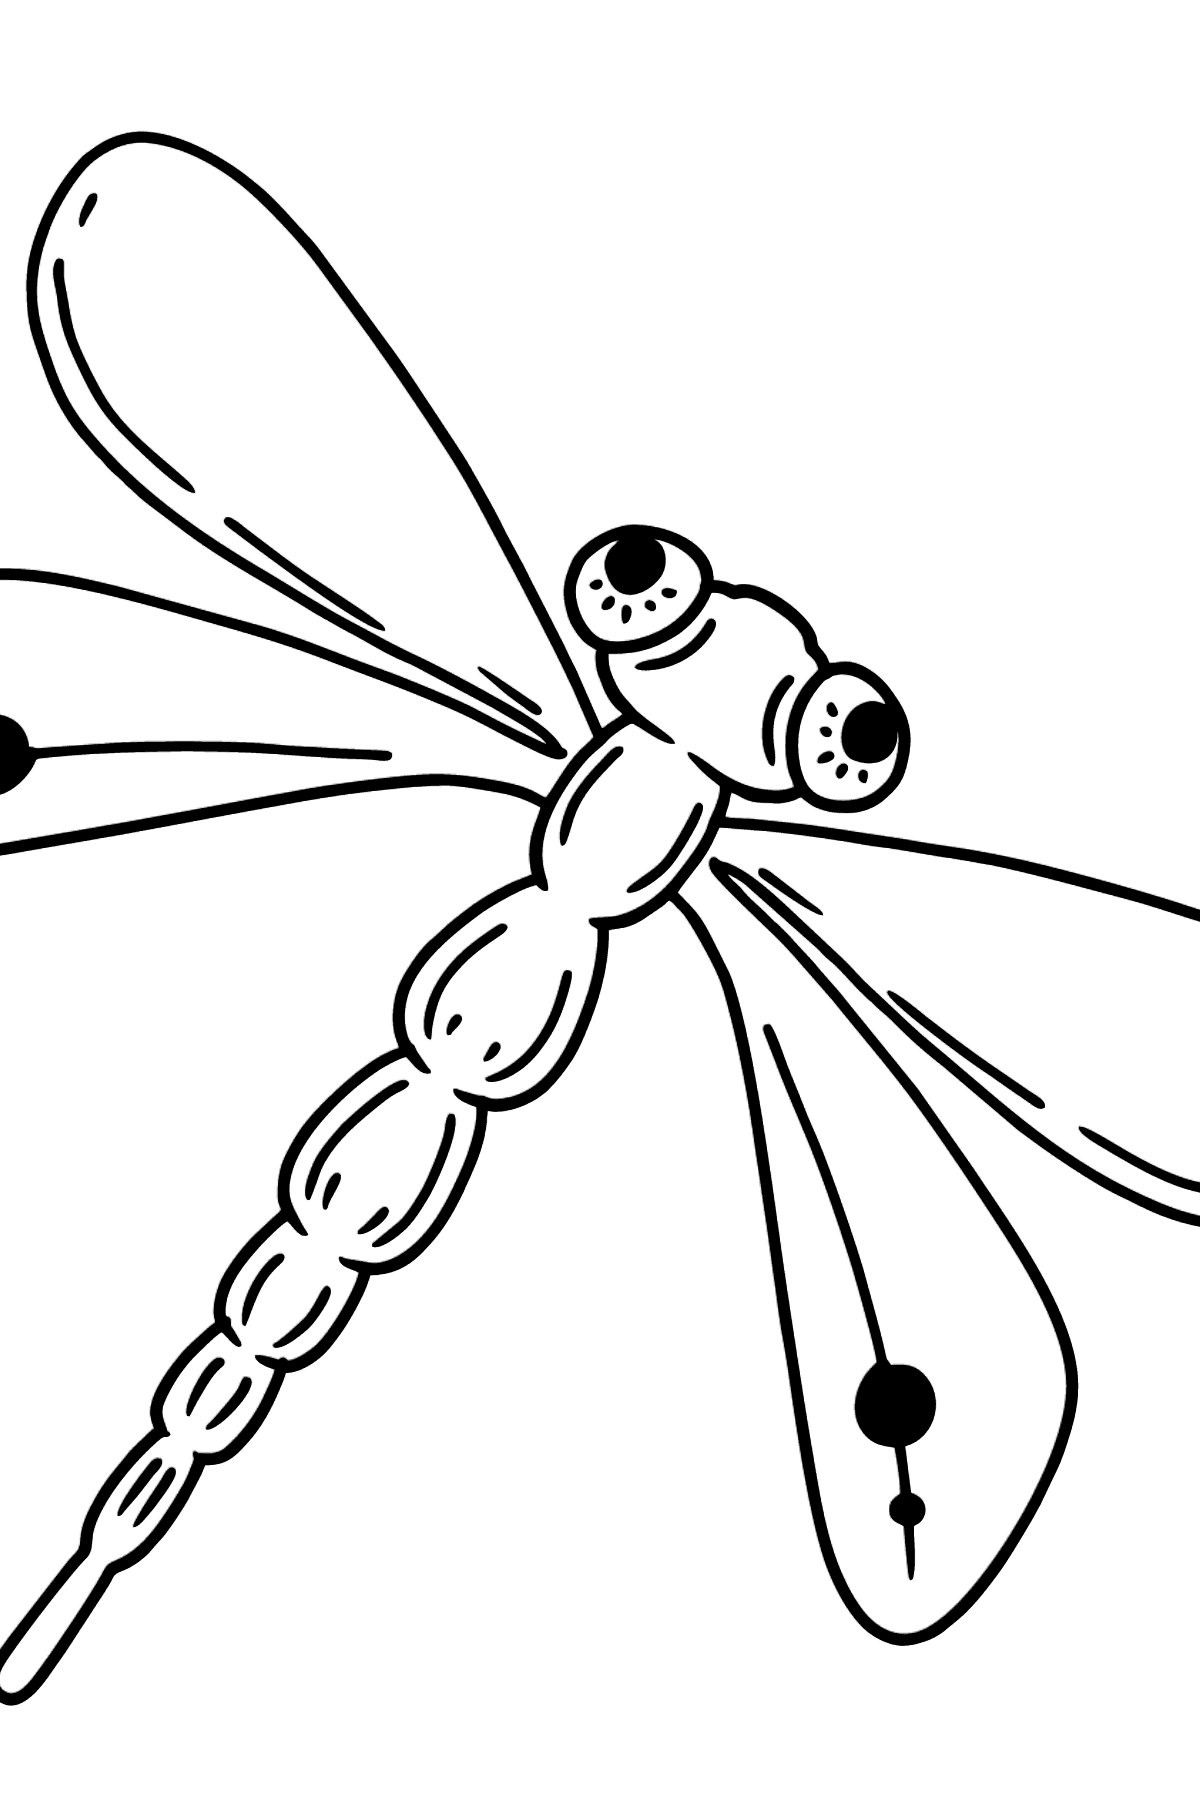 Desenho de libélula para colorir - Imagens para Colorir para Crianças